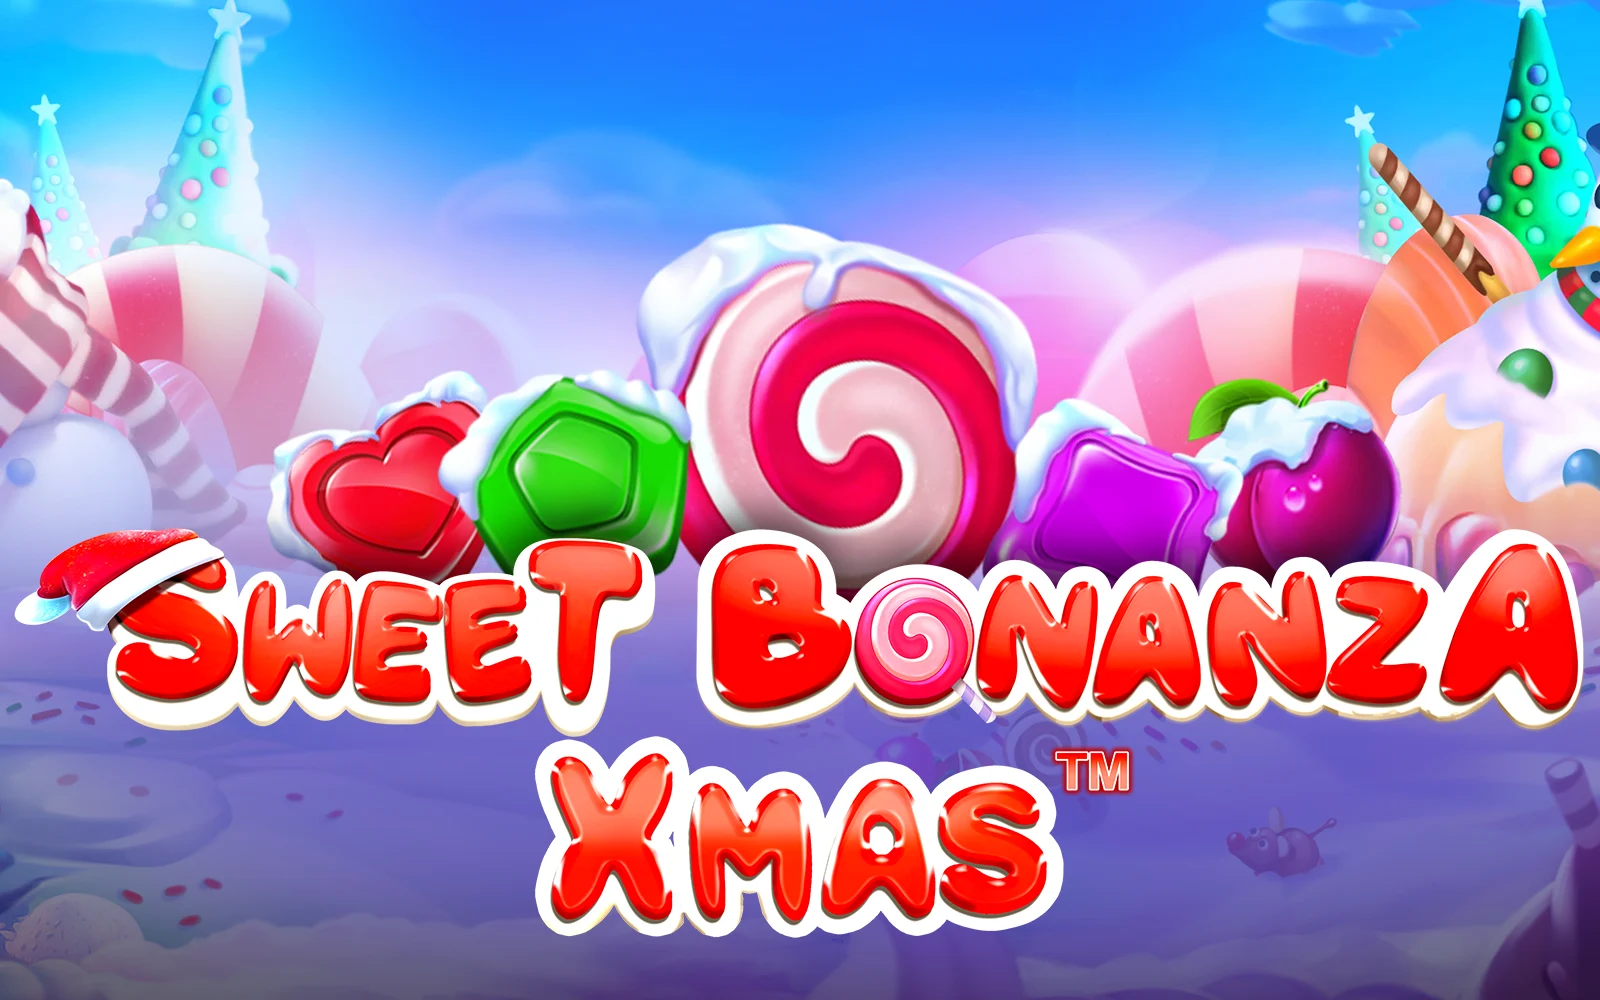 Παίξτε Sweet Bonanza Xmas™ στο online καζίνο Starcasino.be